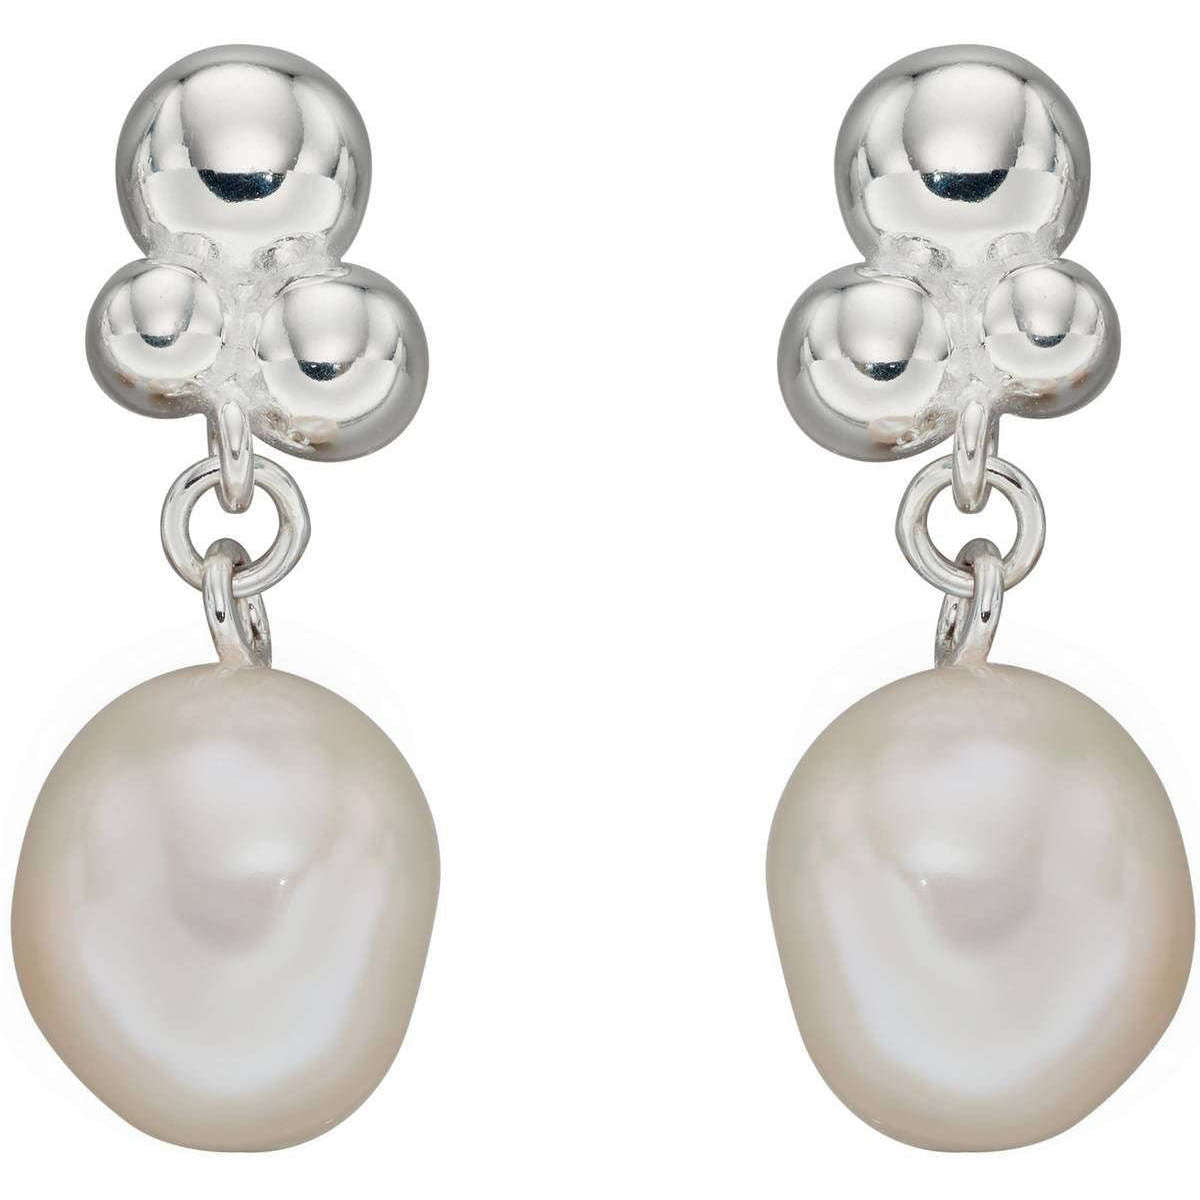 Elements Silver Freshwater Pearl Bubble Drop Earrings - Silver/White